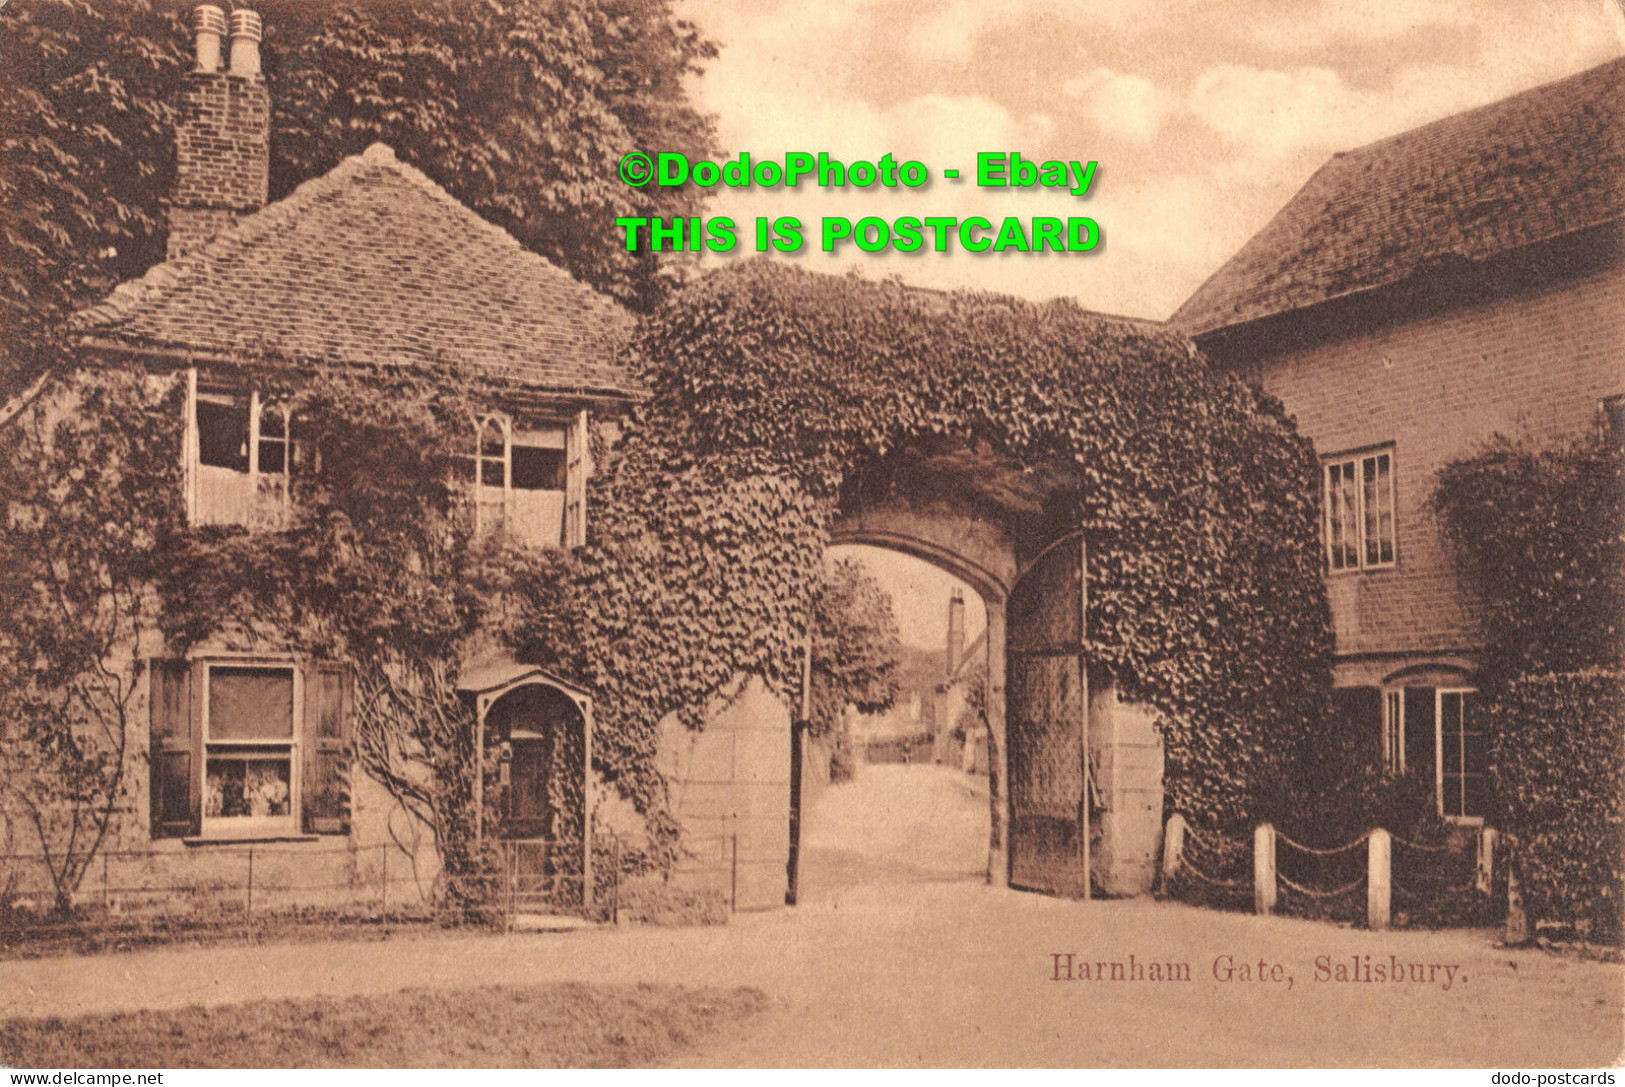 R358522 Salisbury. Harnham Gate. C. Chapman. 1911 - World